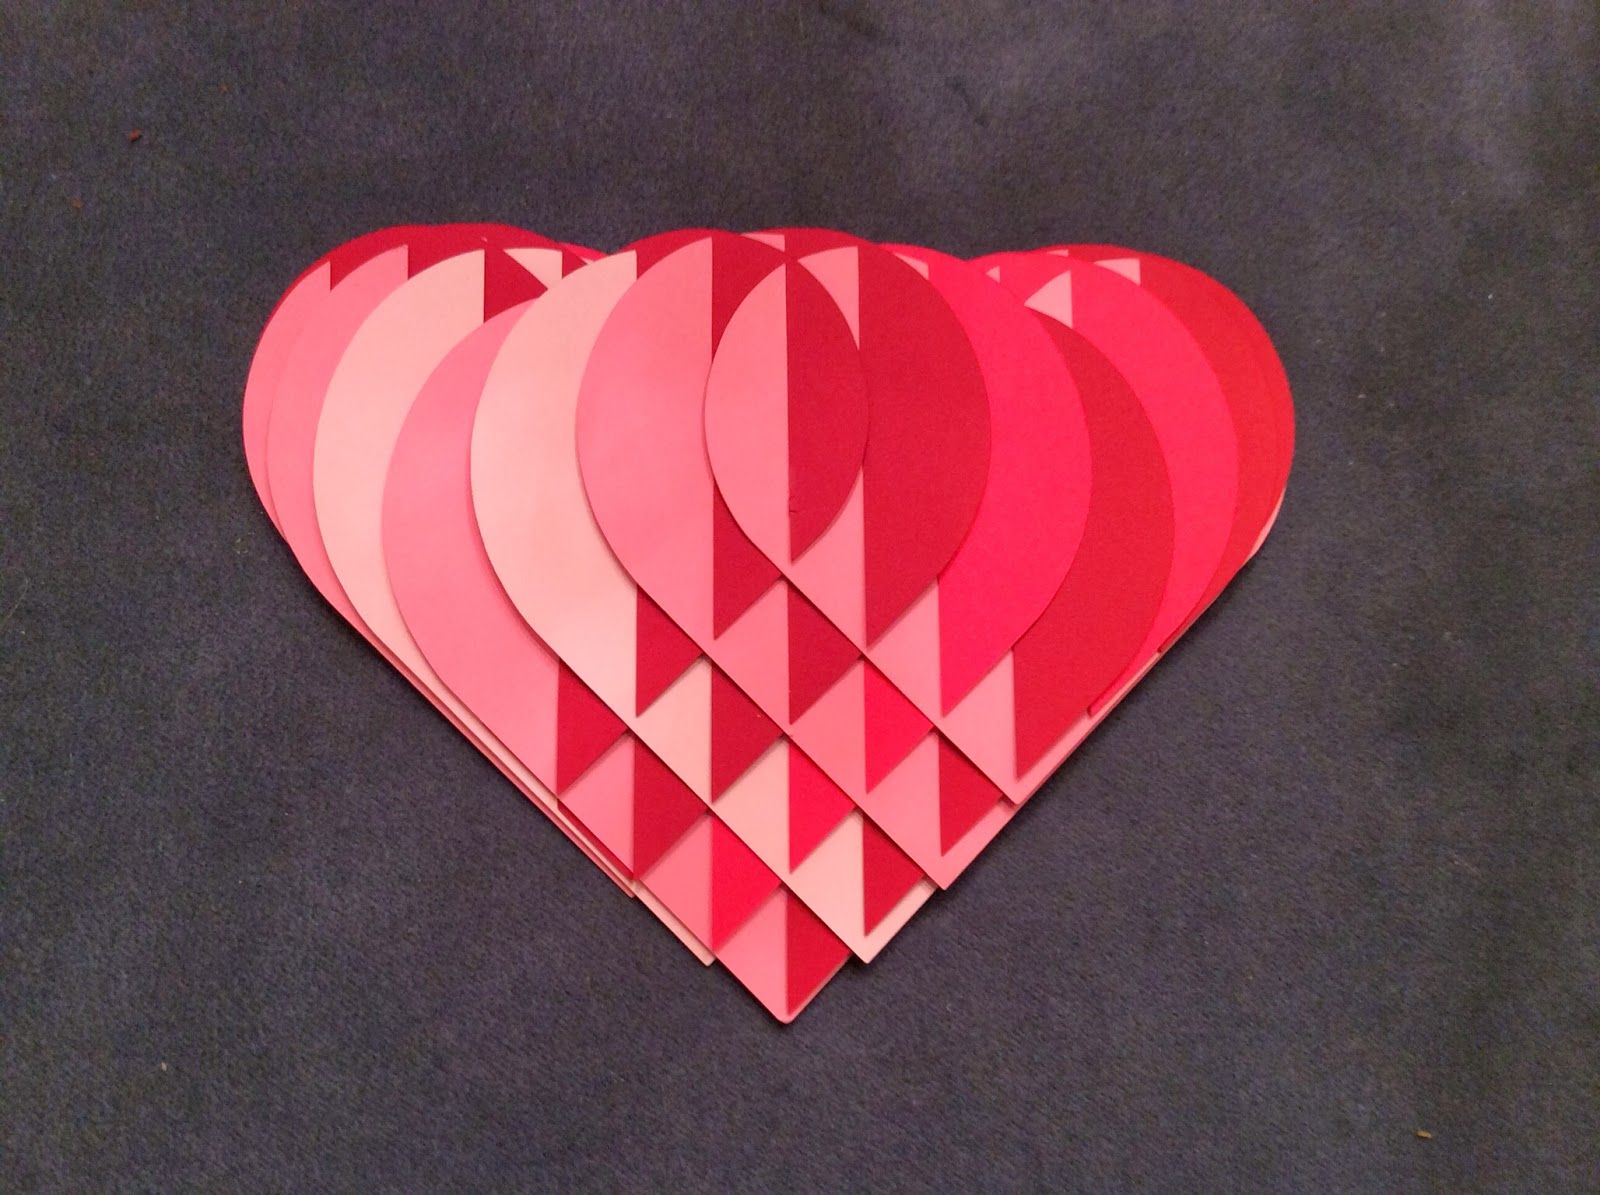 Сердечки из сердечек: Сердечко из сердечек в ВК скопировать сообщение